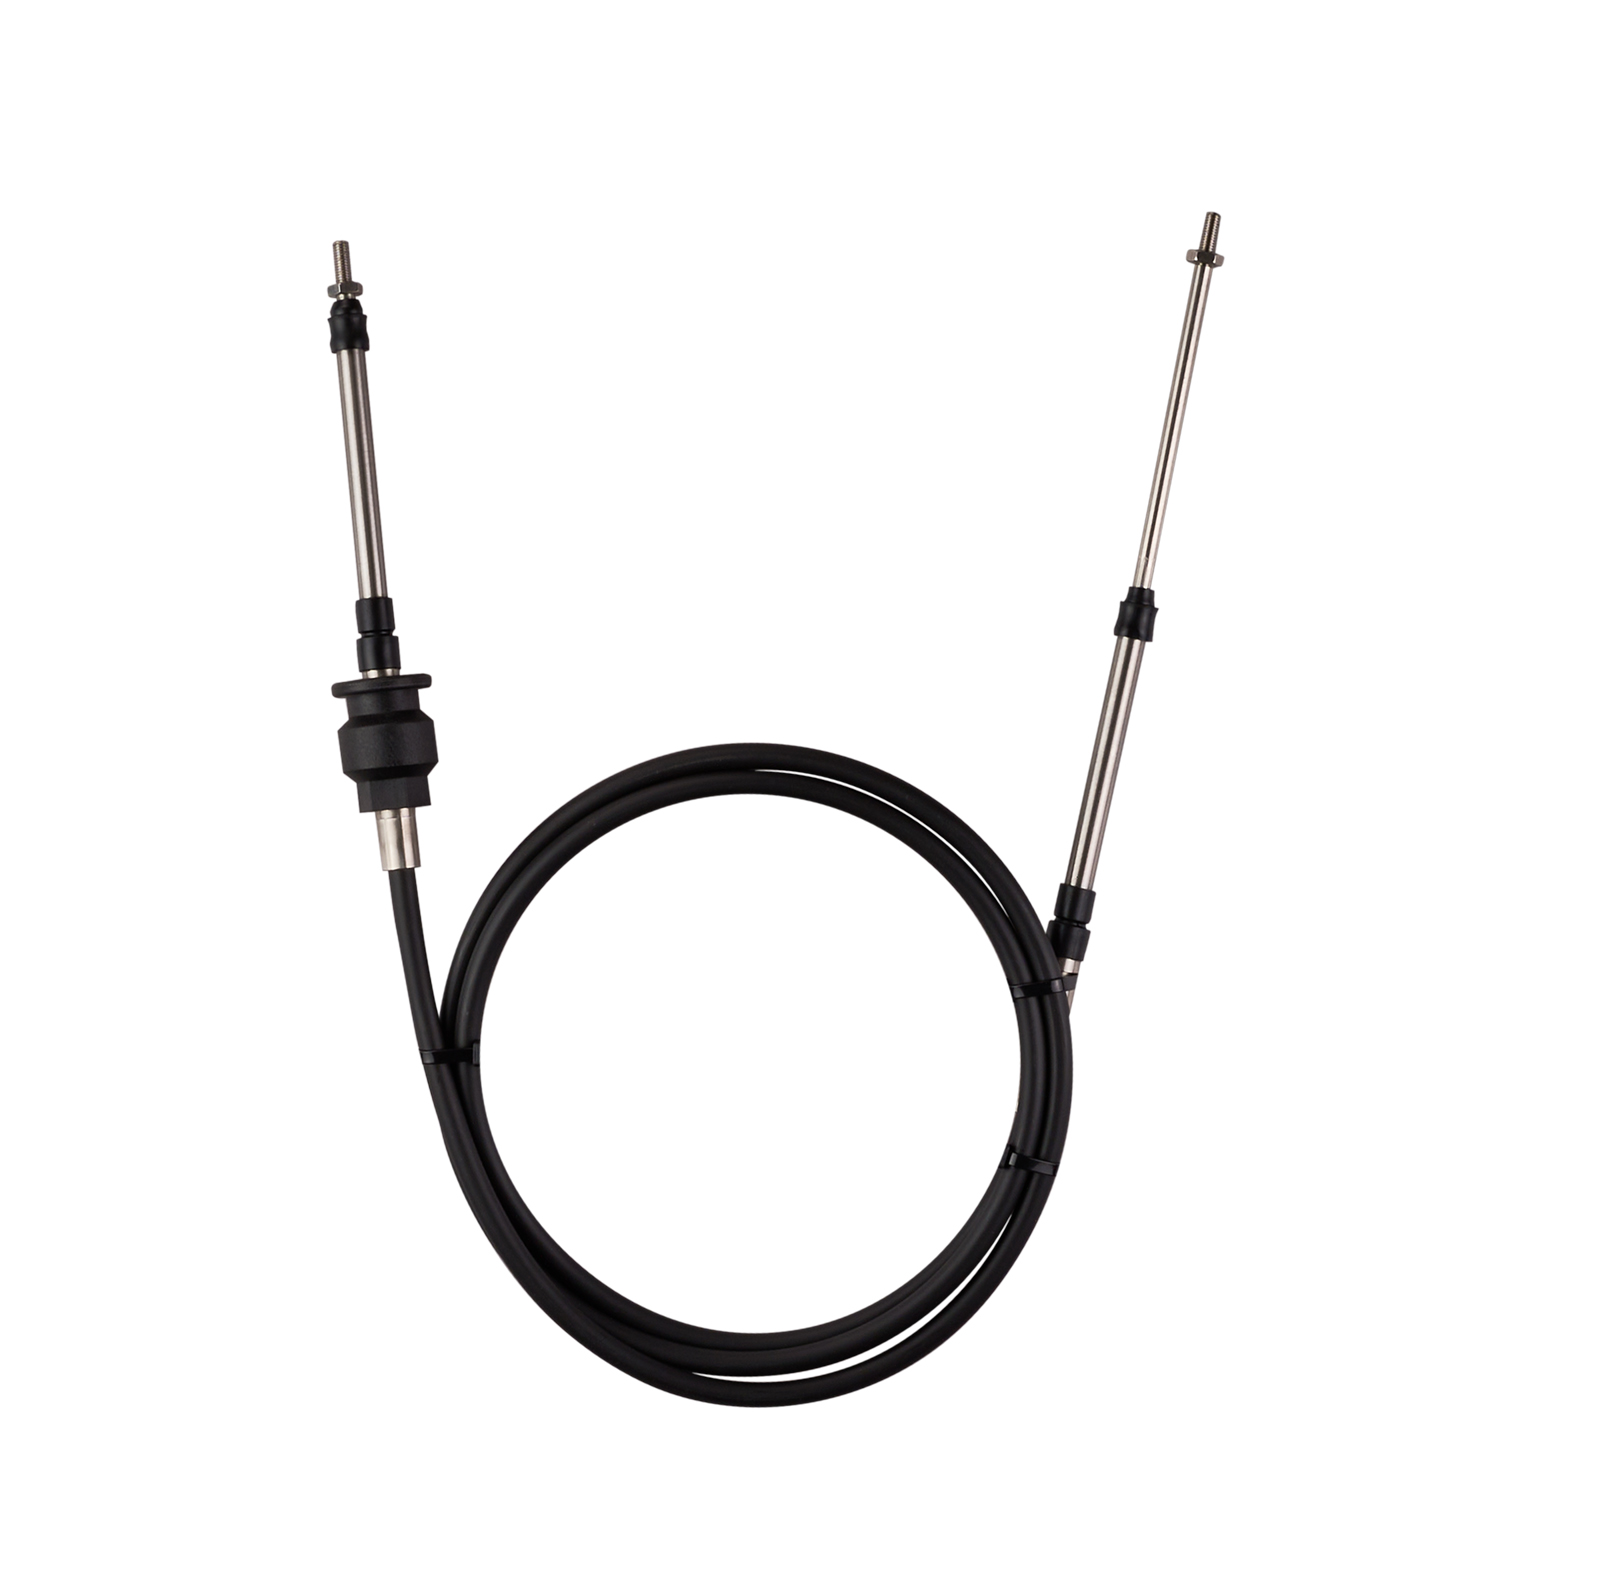 Steering Cable for Sea-Doo RXP/ RXP SC/ RXP-X: ShopSBT.com